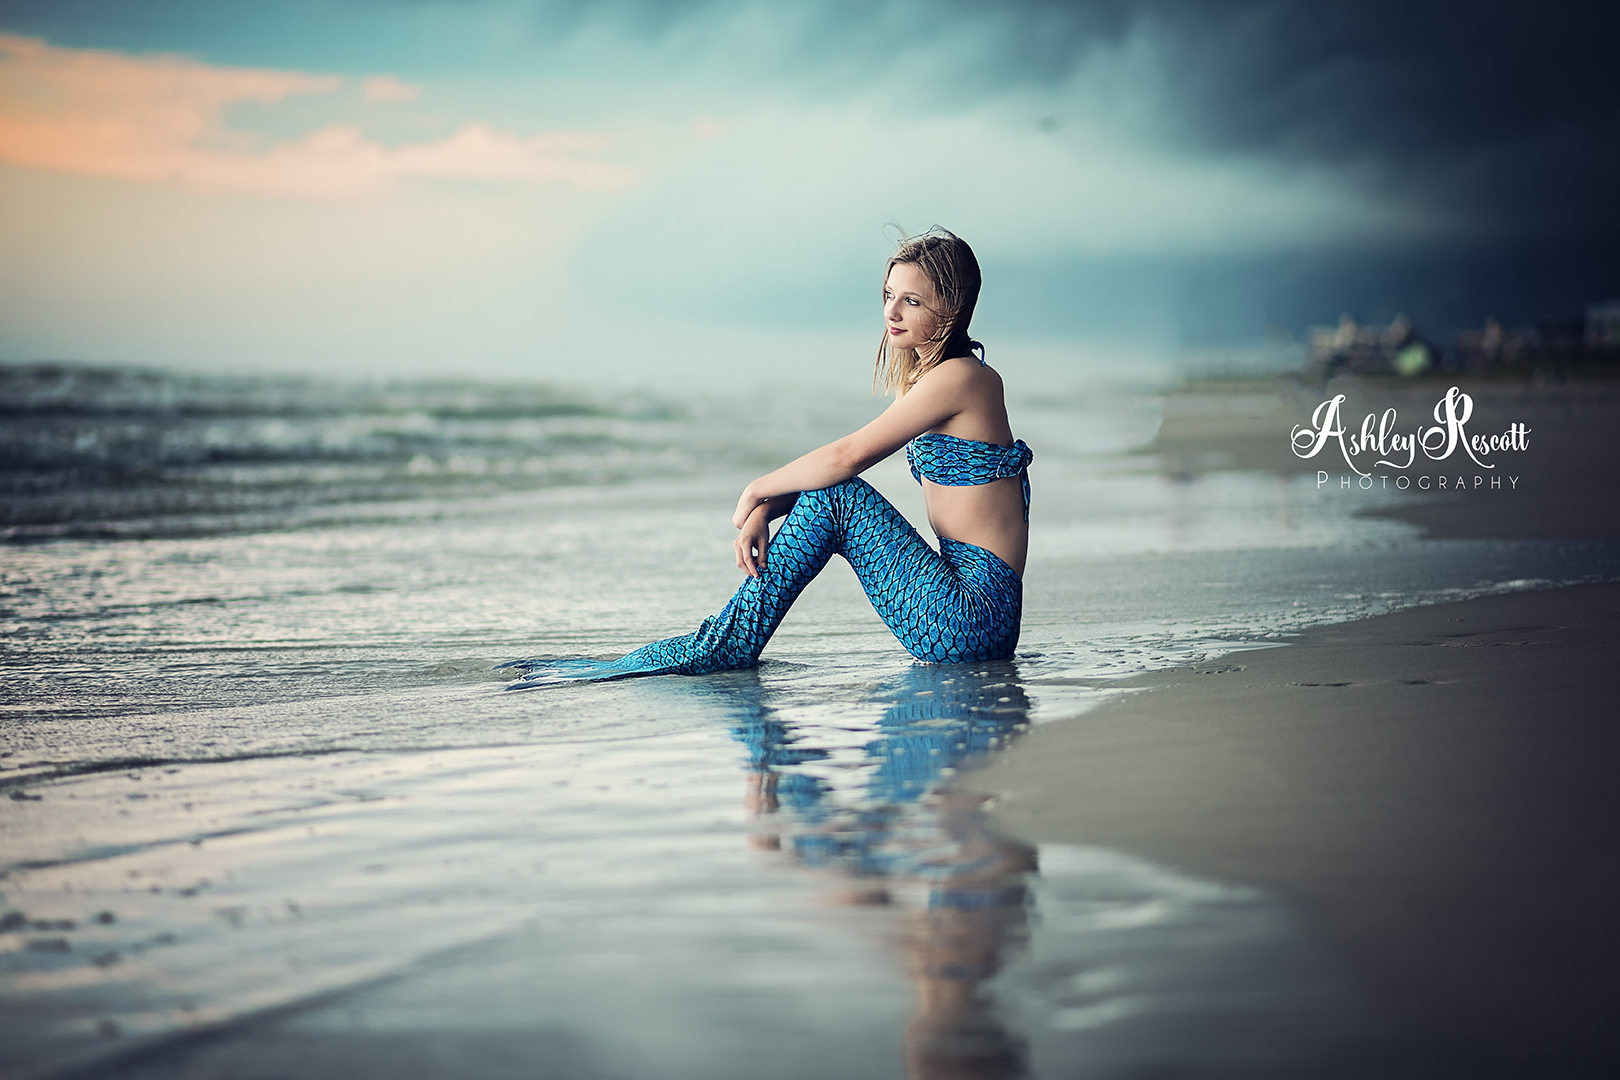 mermaid on beach with stormy skies